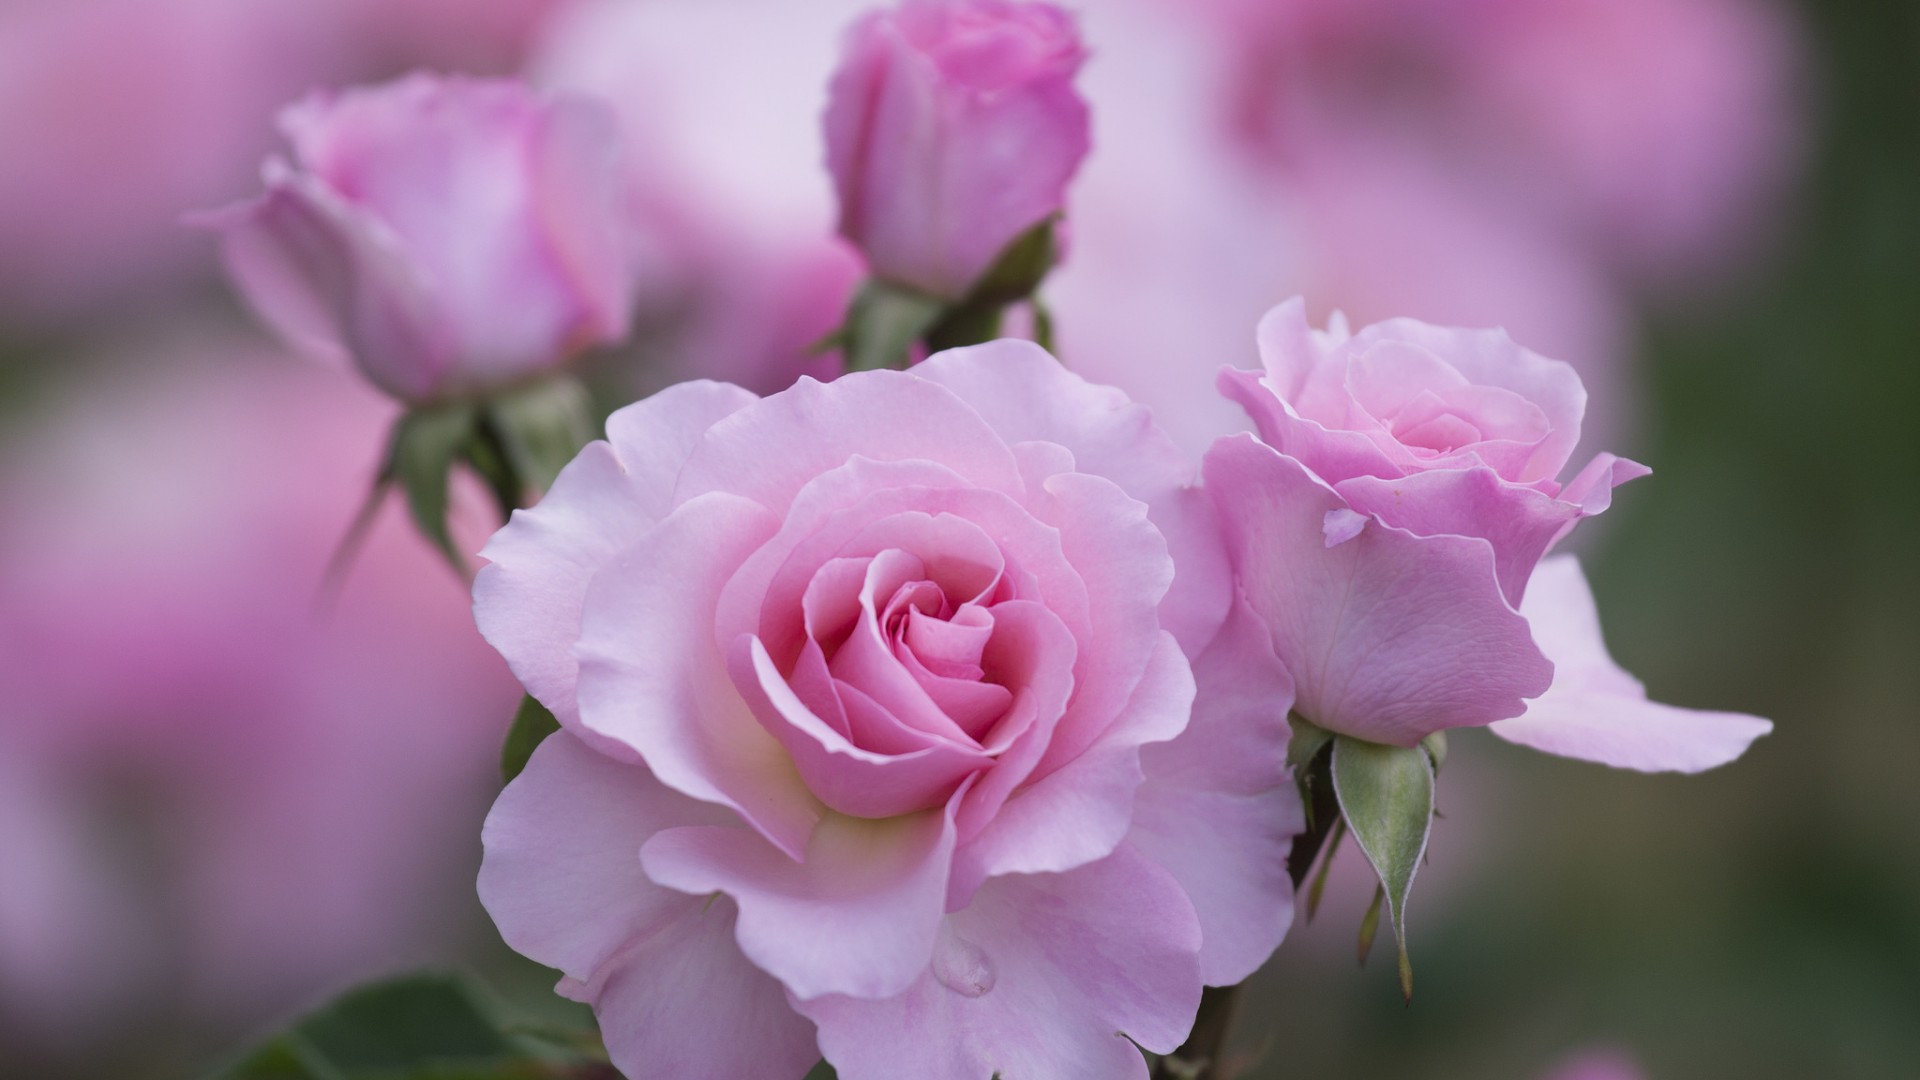 粉红色玫瑰,花瓣,桌面高清壁纸